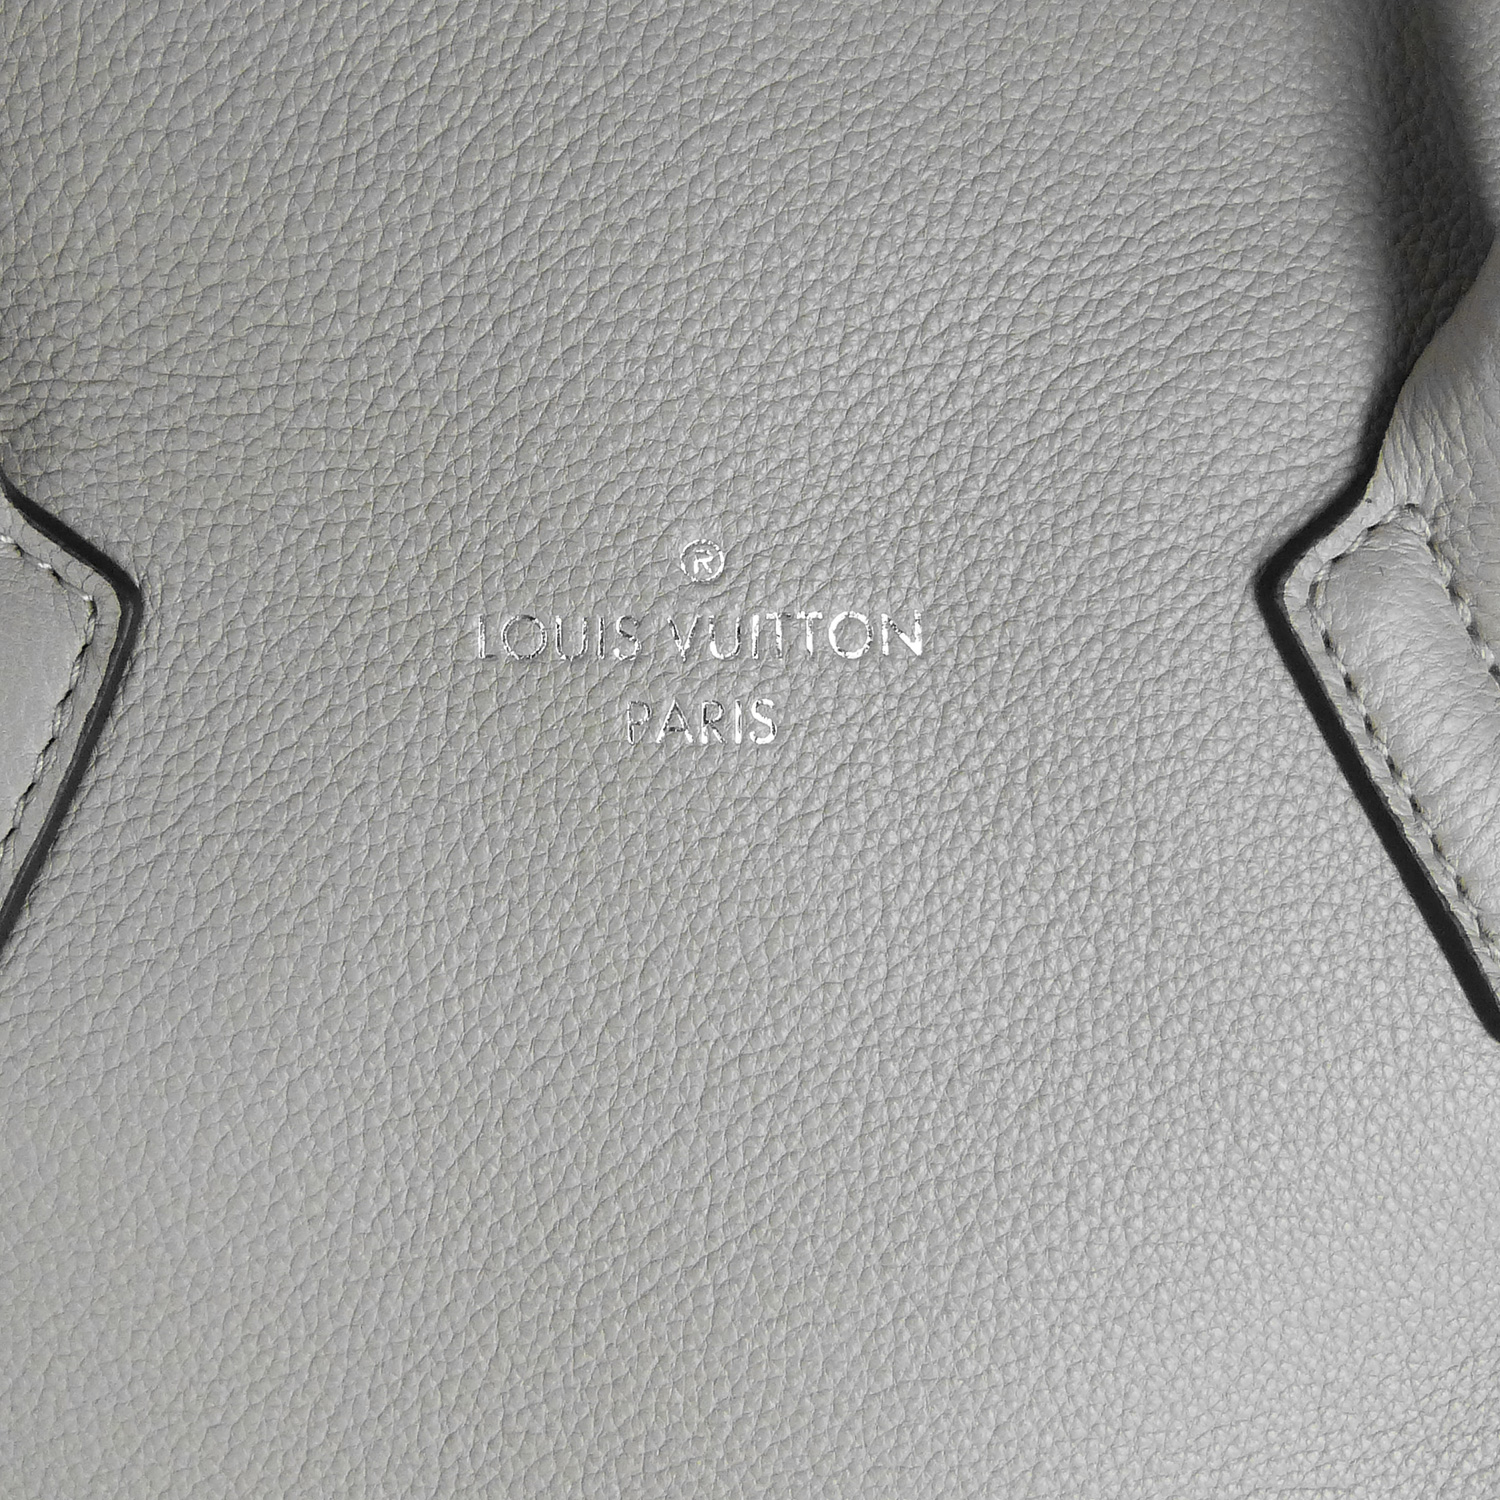 Sac à main Louis Vuitton Lockit MM Authentique d'occasion en cuir de veau cachemire couleur Galet